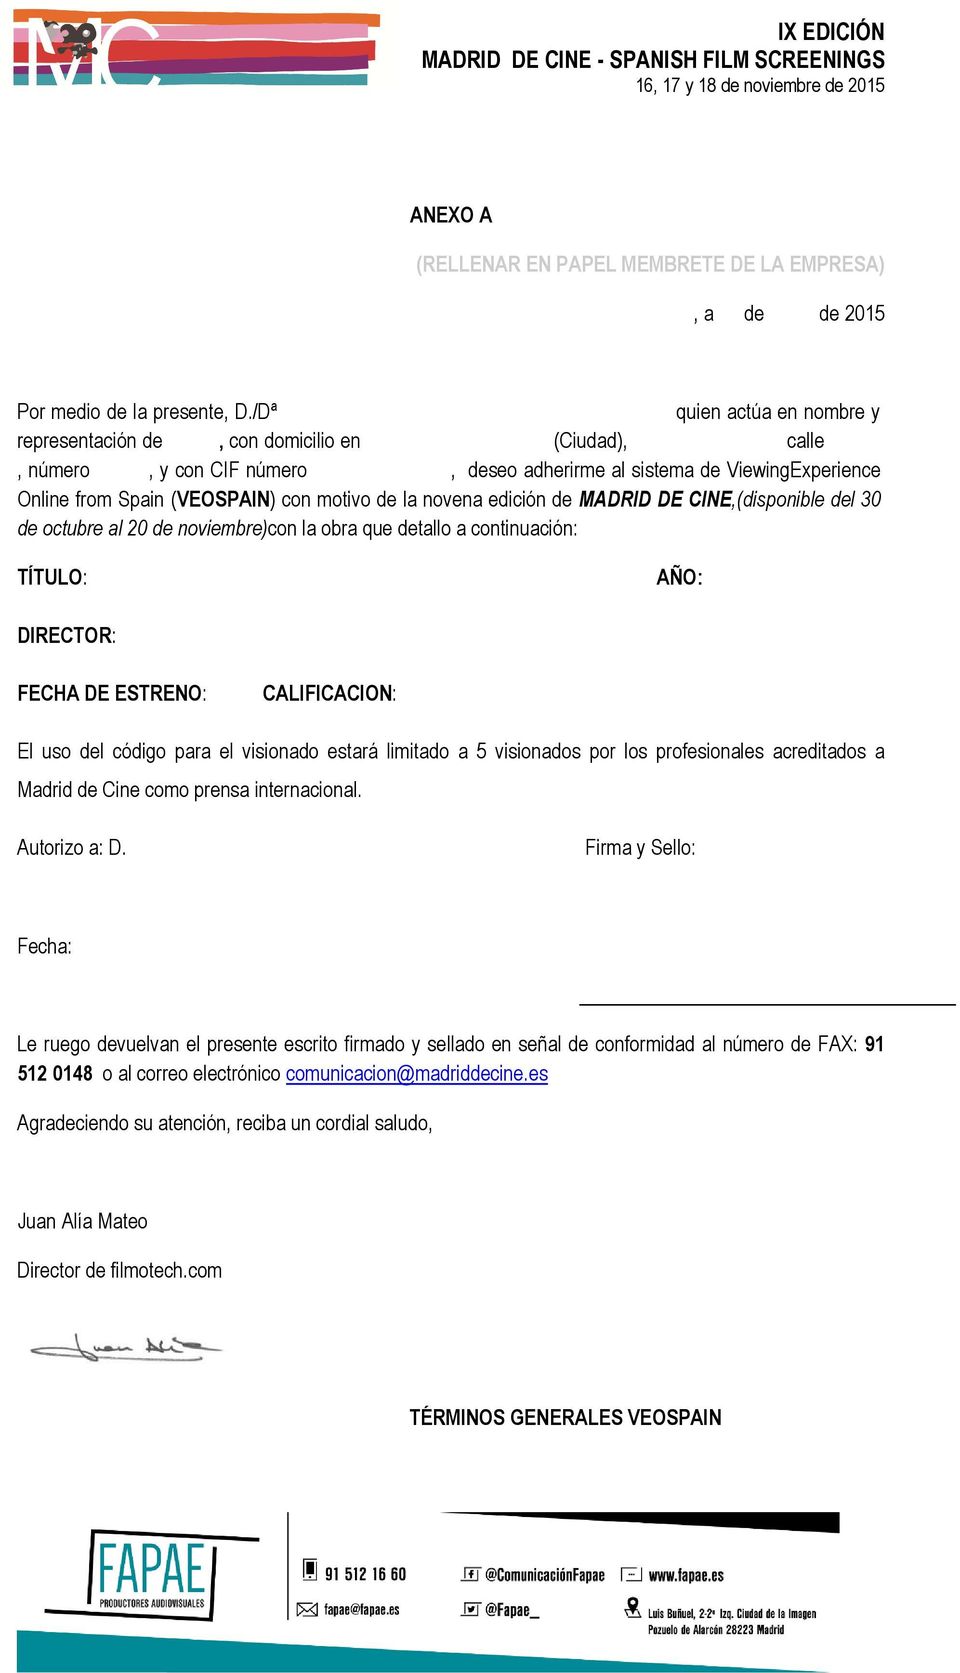 la novena edición de MADRID DE CINE,(disponible del 30 de octubre al 20 de noviembre)con la obra que detallo a continuación: TÍTULO: AÑO: DIRECTOR: FECHA DE ESTRENO: CALIFICACION: El uso del código